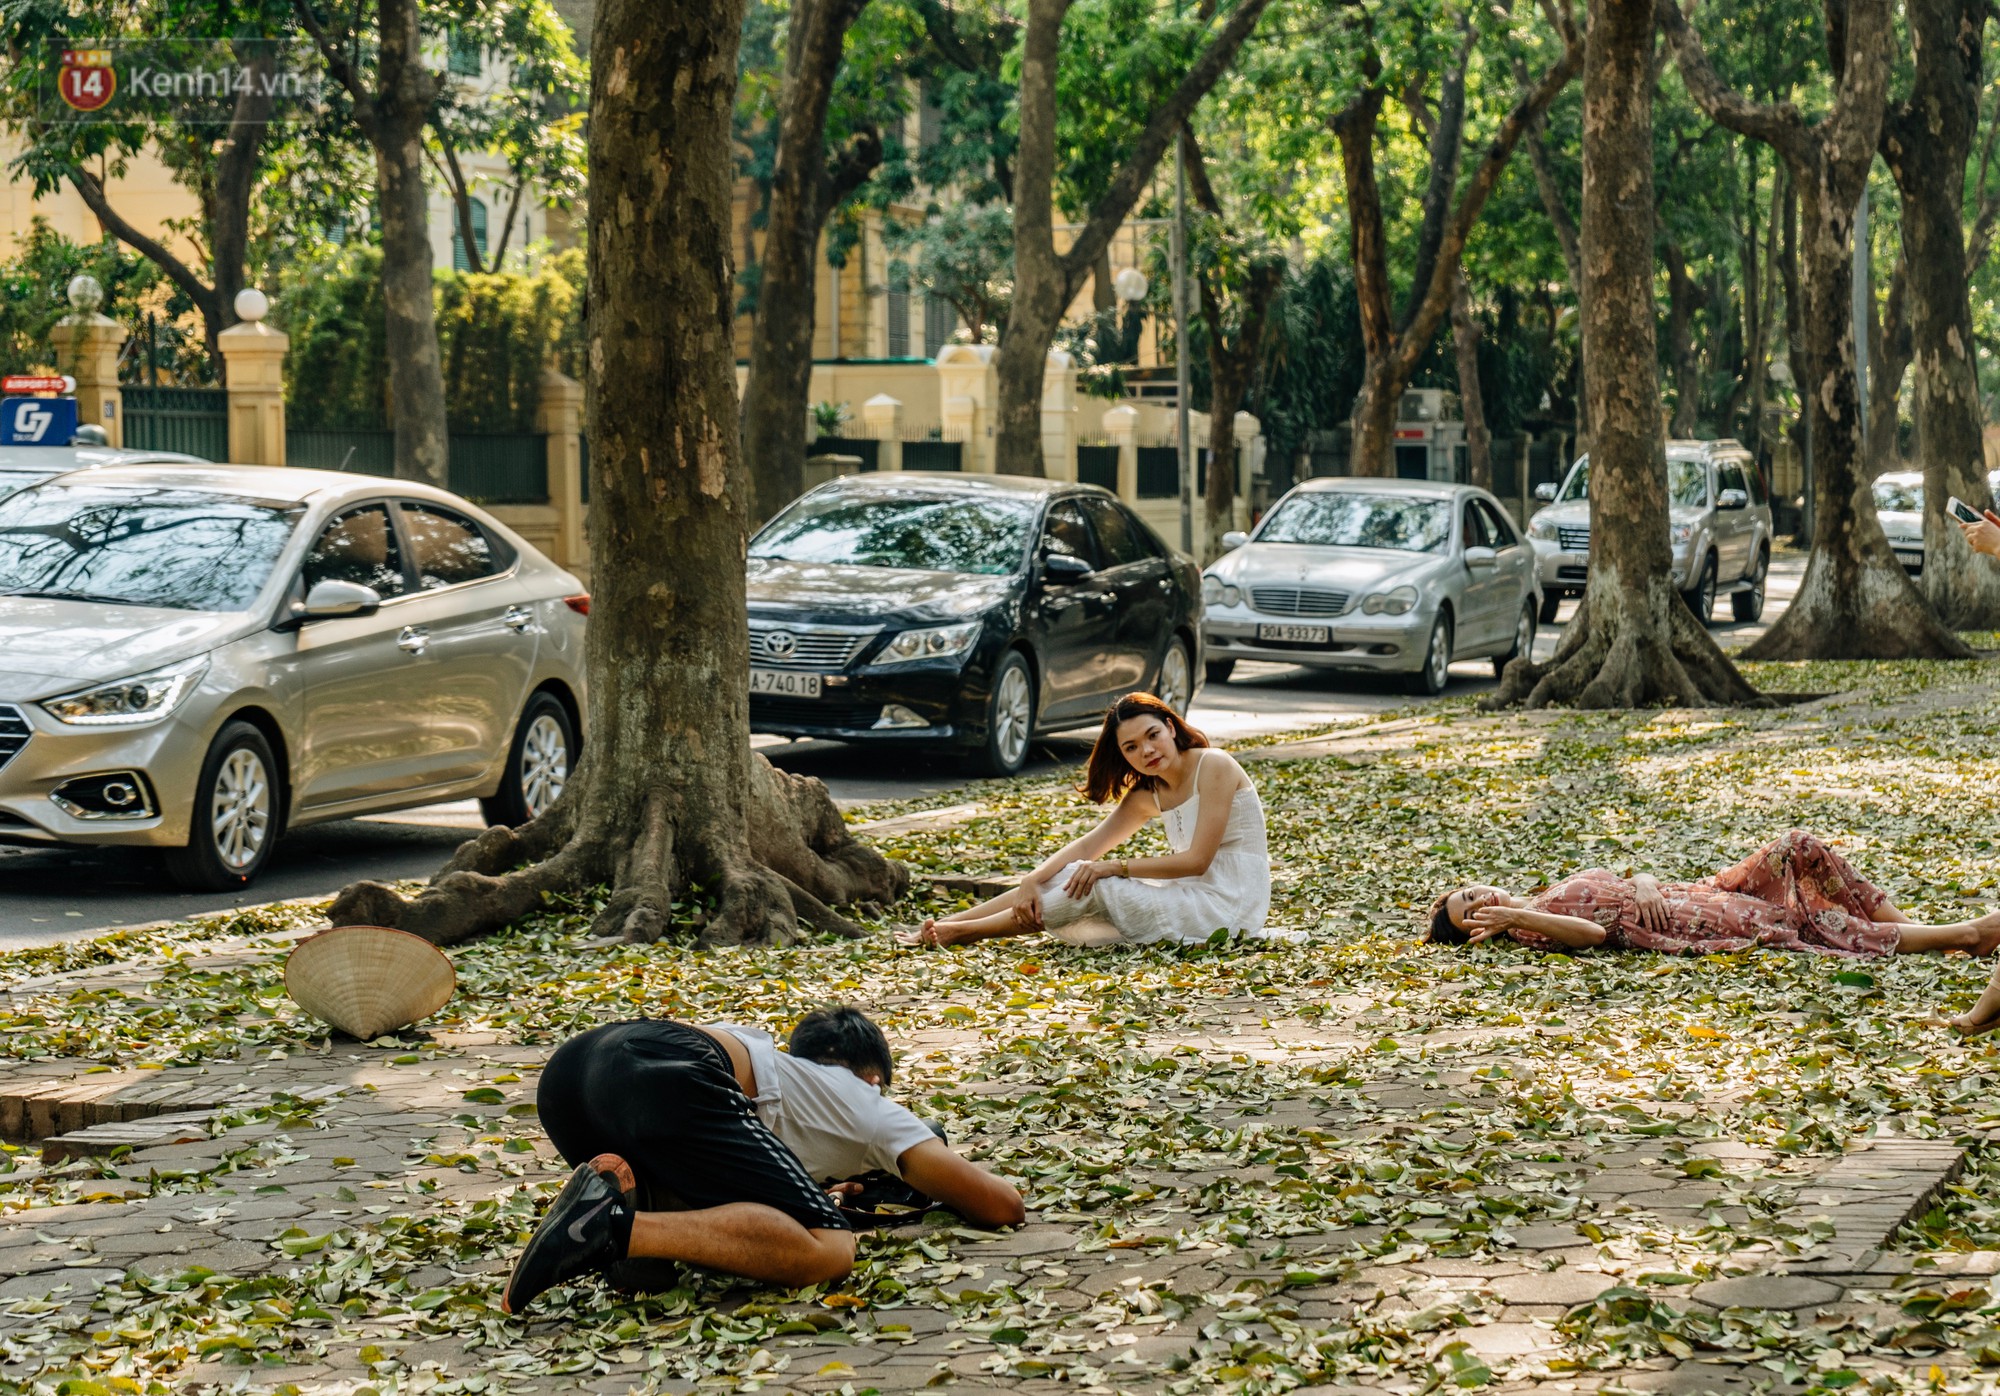 Mùa lá sấu tung bay, người dân kéo tới chụp ảnh ở con đường lãng mạn nhất Thủ đô dù nắng nóng 40 độ C - Ảnh 14.